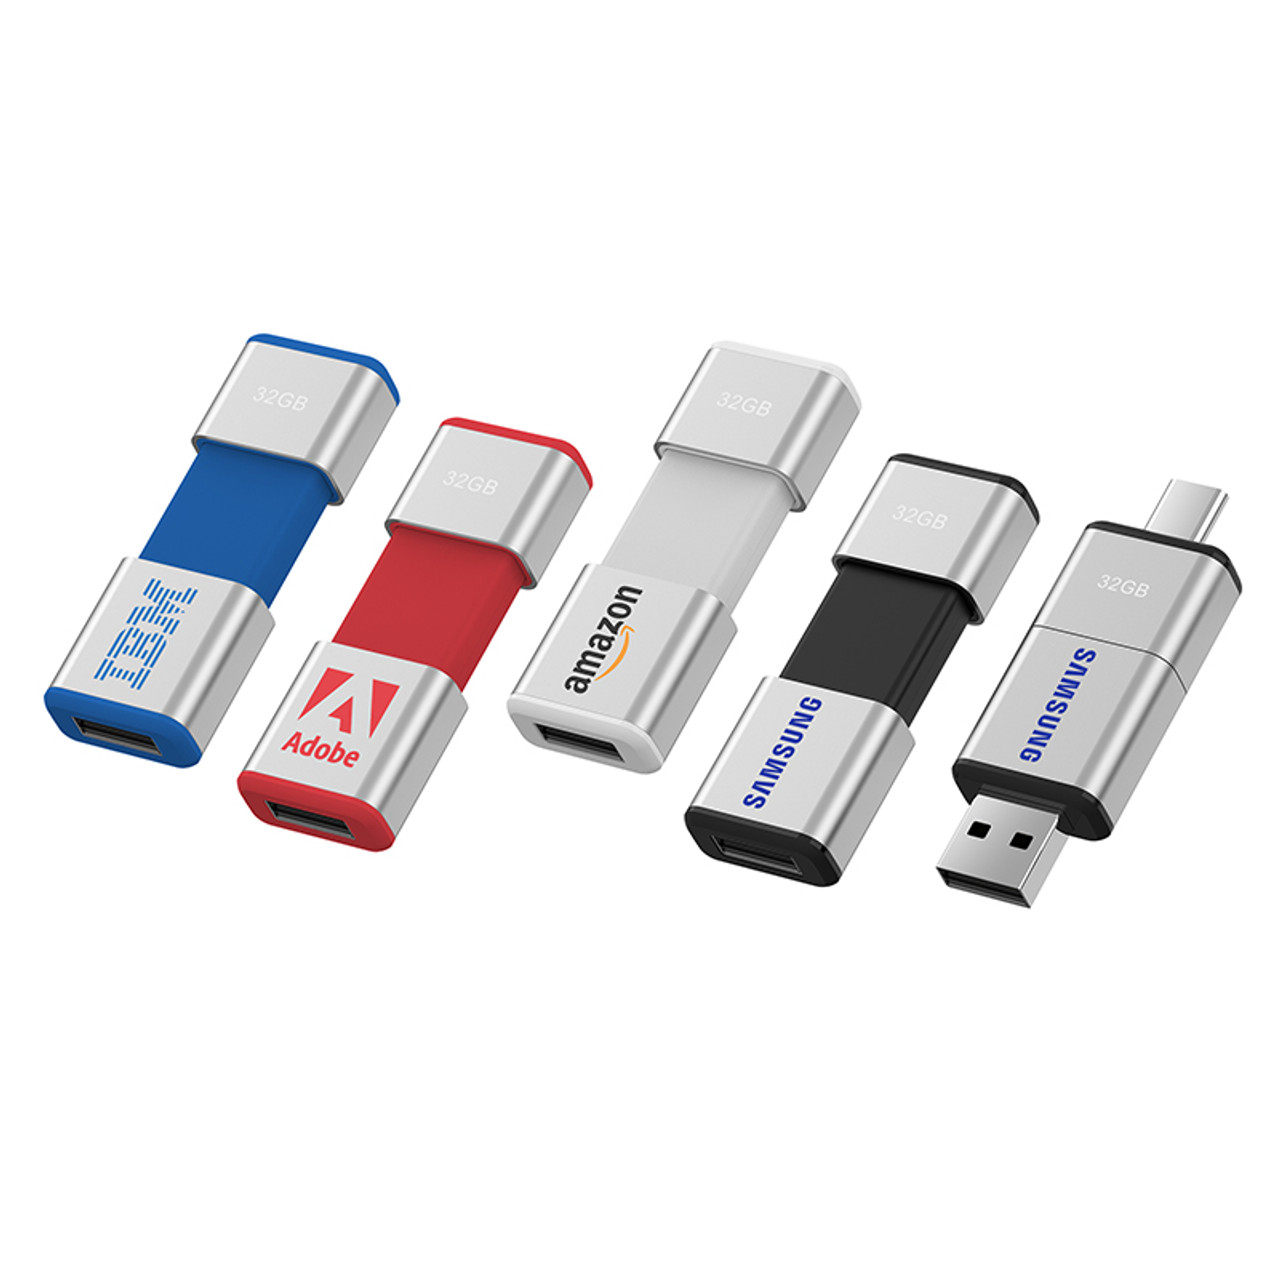 Customize JCB Shape USB ABS Plastic Material USB Flash Drive 32GB